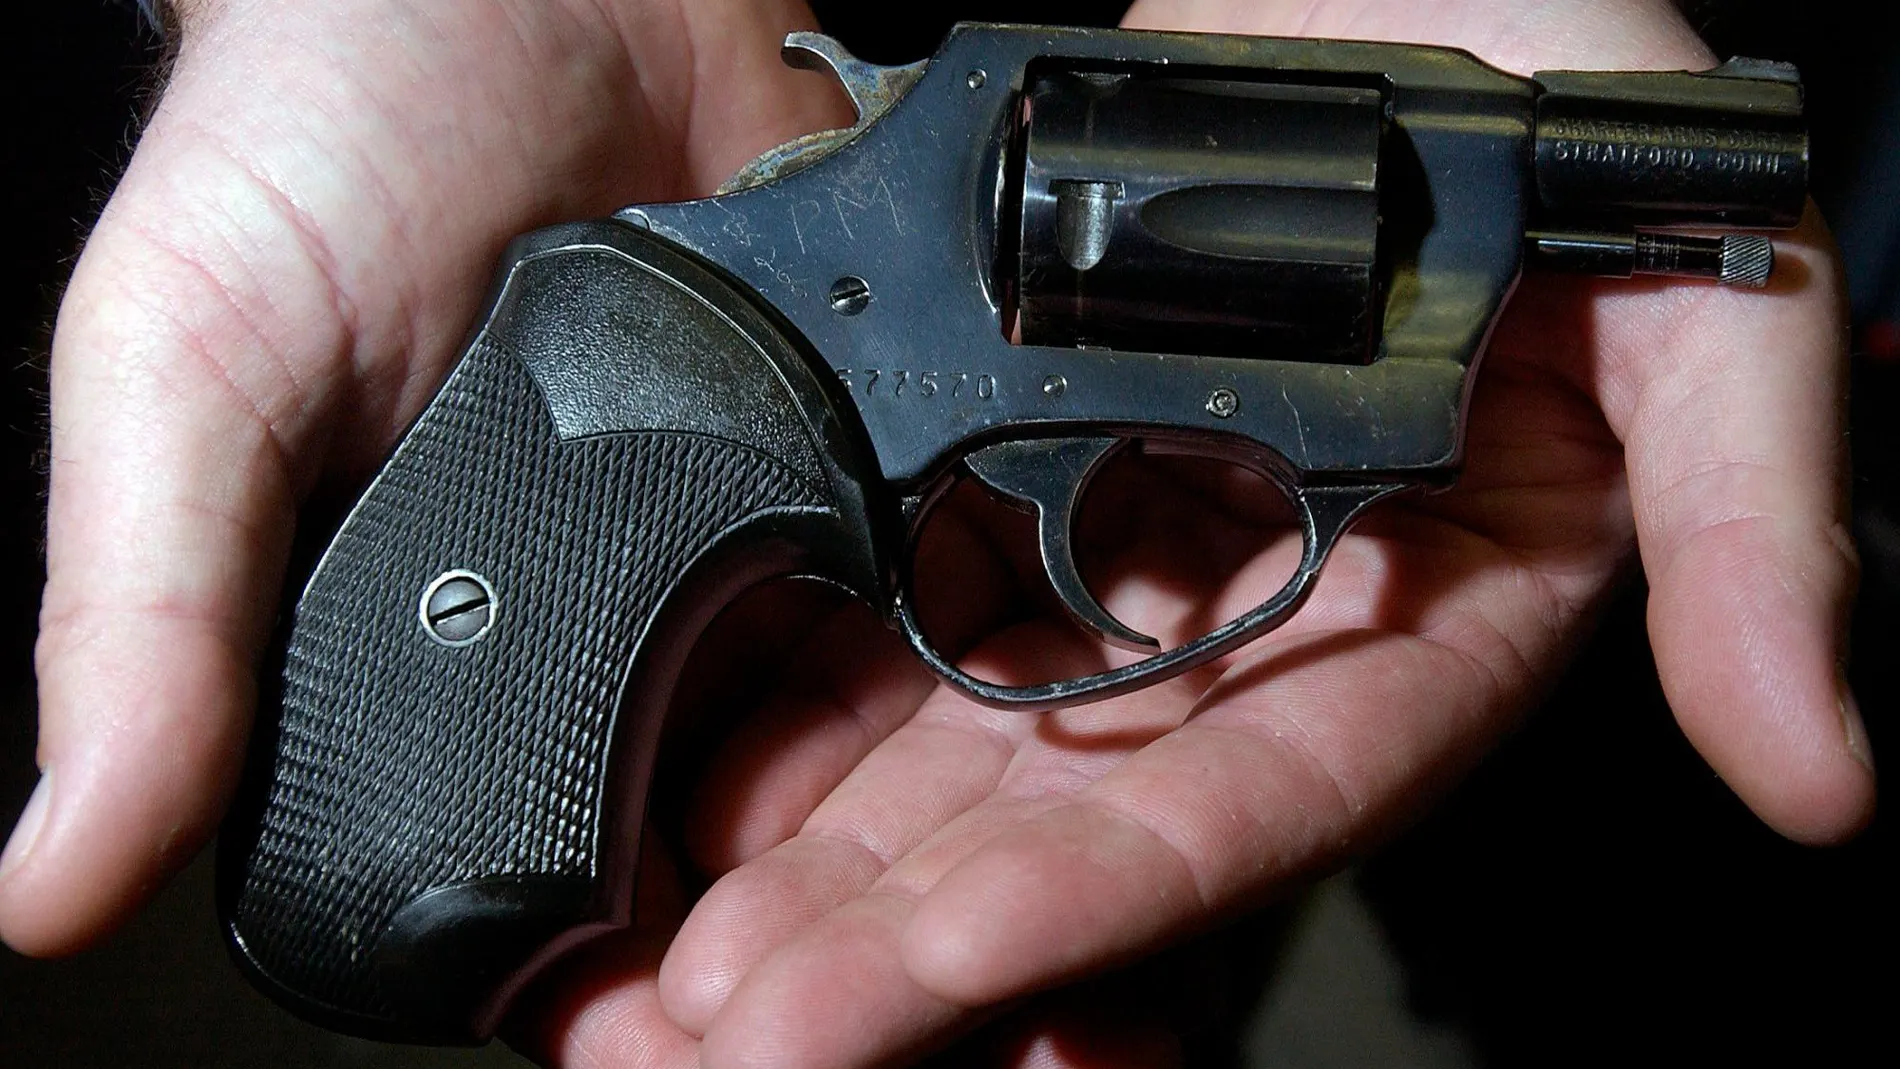 Imagen de un revólver calibre 38 similar al que utilizaba el joven para asesinar a sus víctimas